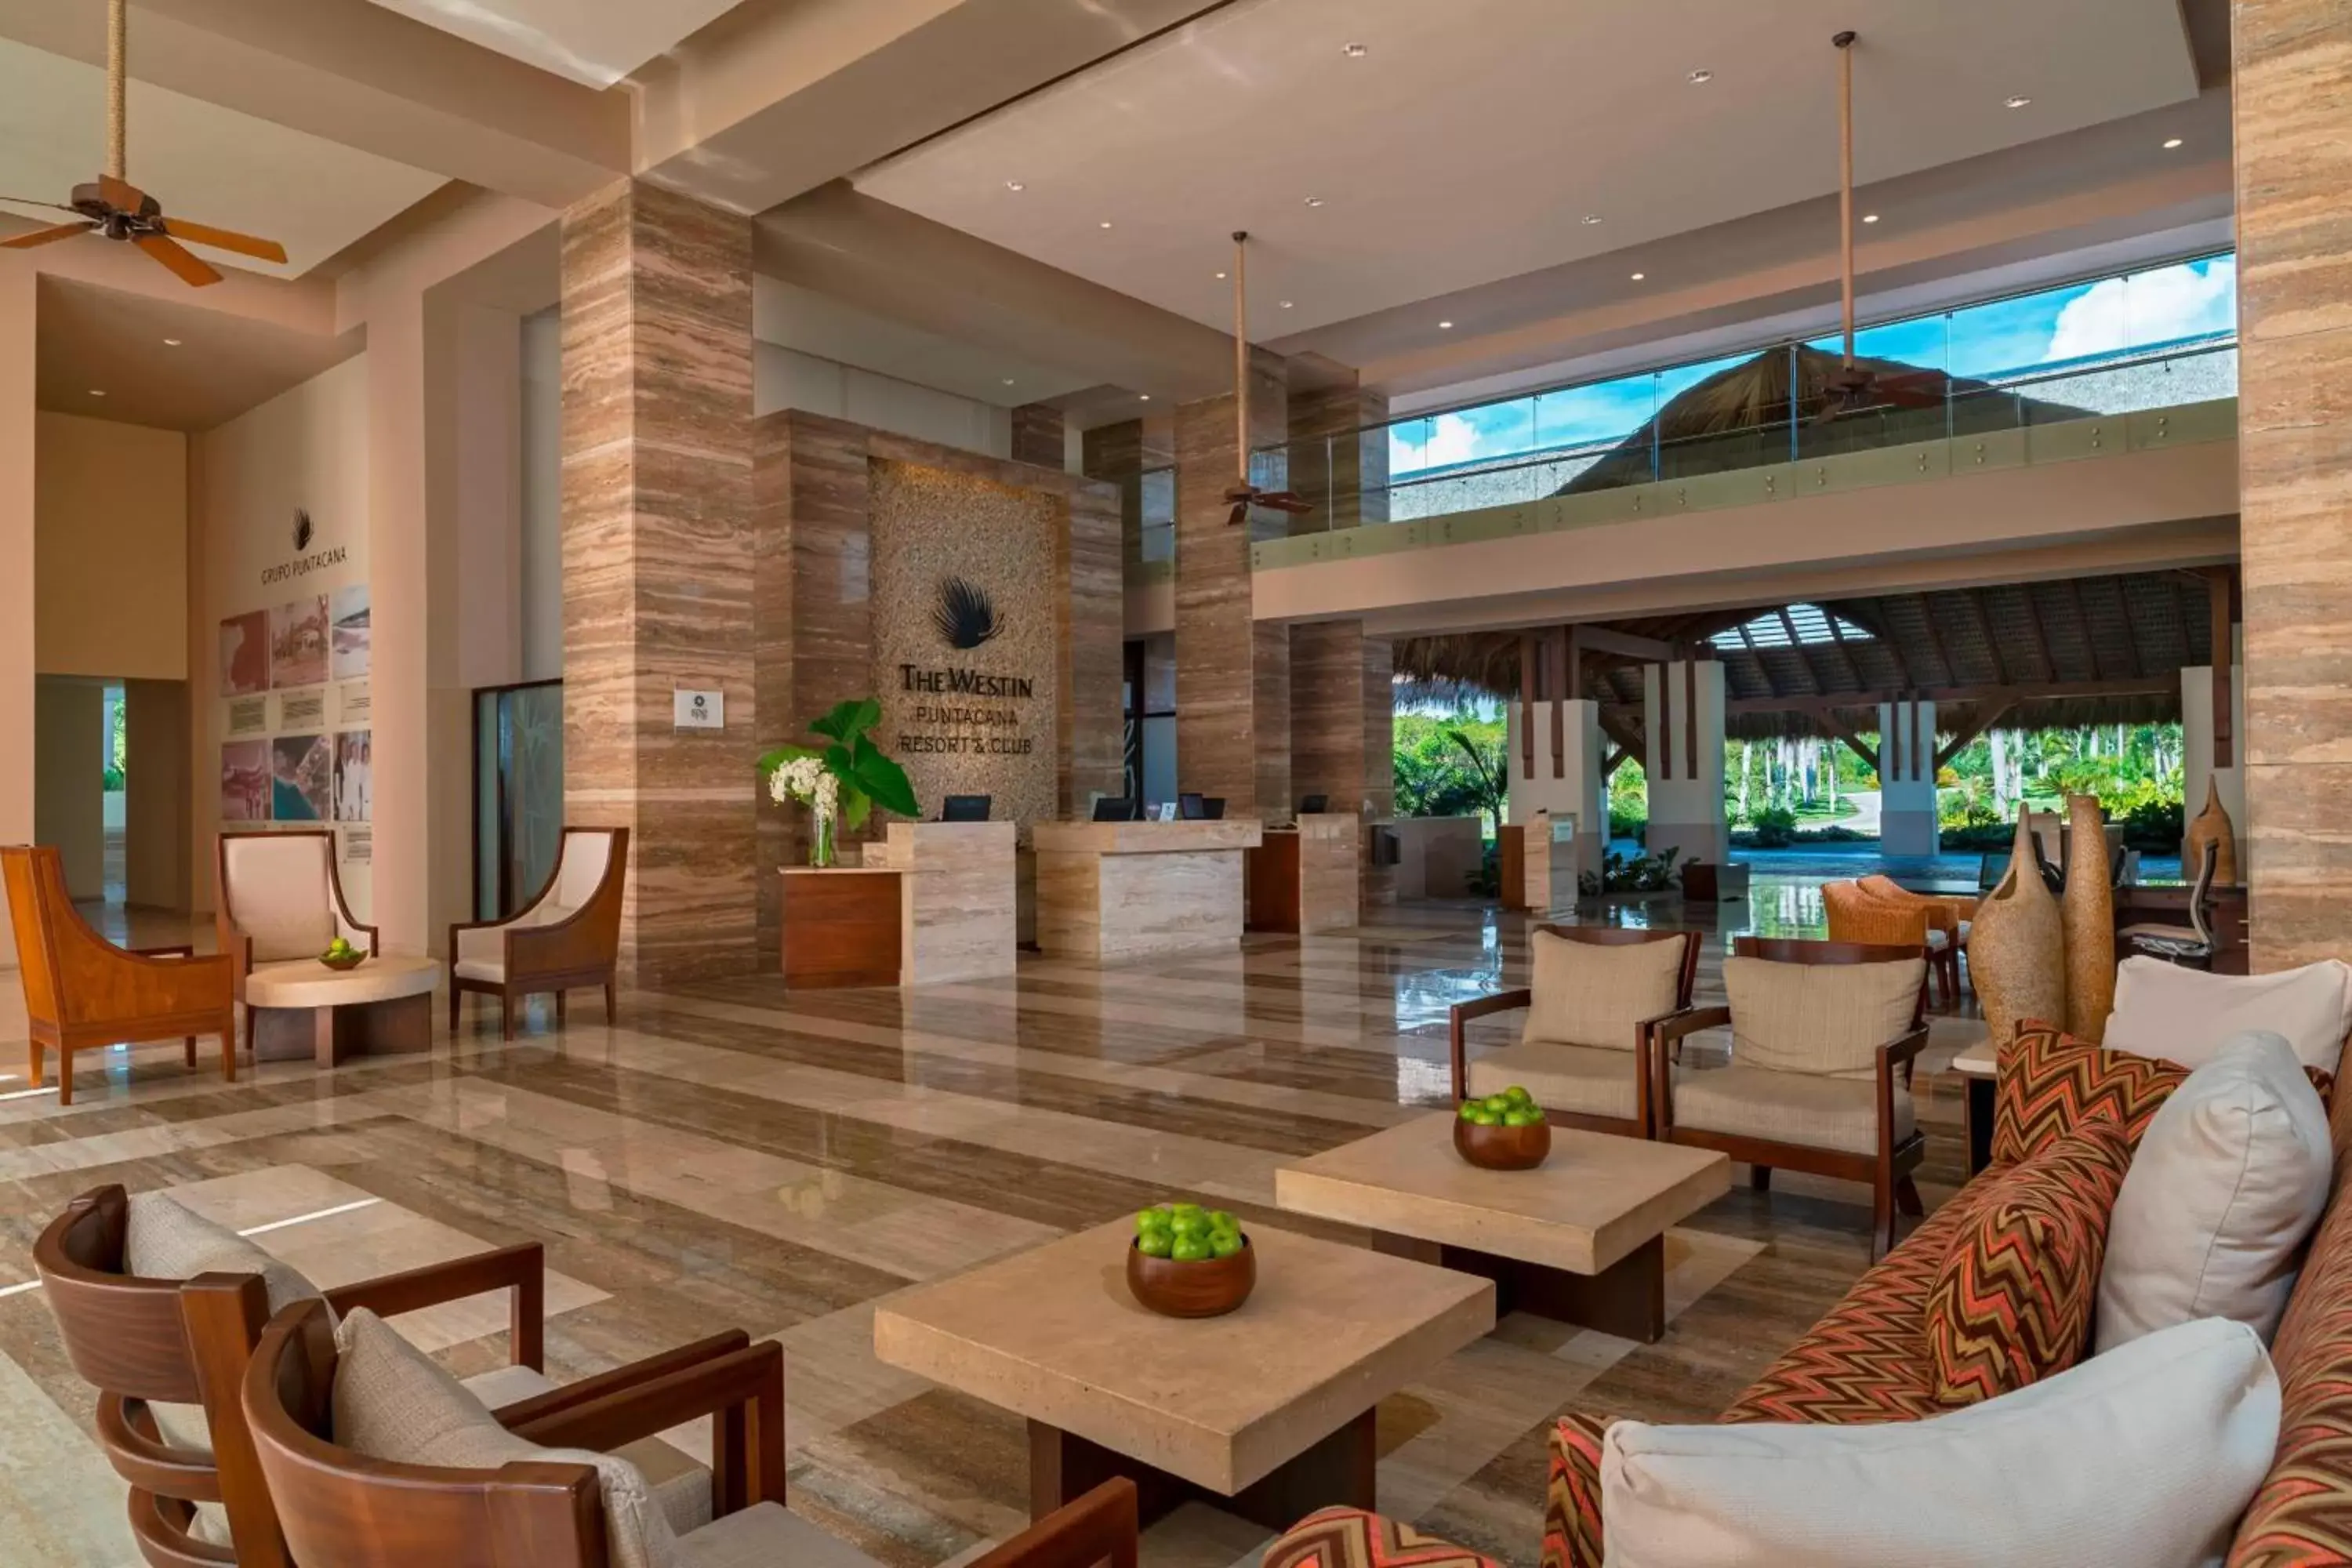 Lobby or reception, Lobby/Reception in The Westin Puntacana Resort & Club